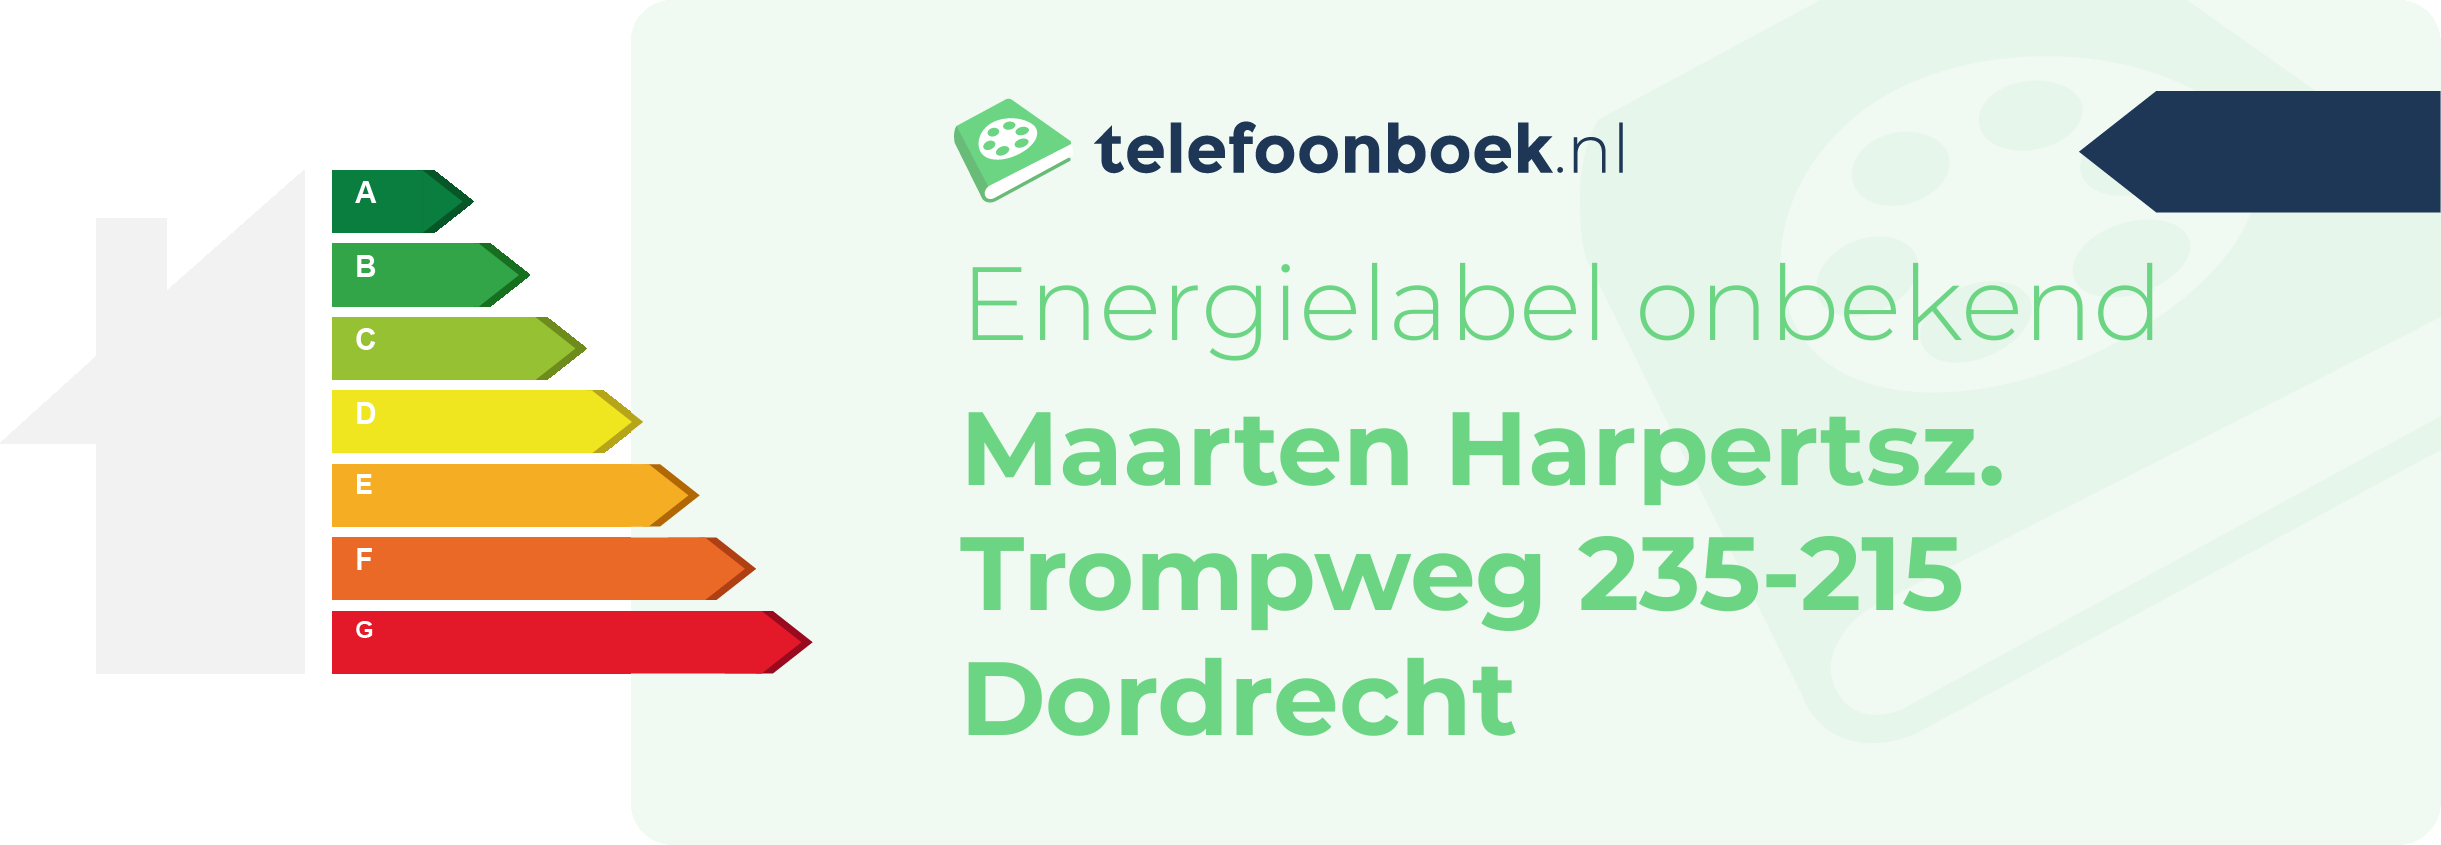 Energielabel Maarten Harpertsz. Trompweg 235-215 Dordrecht